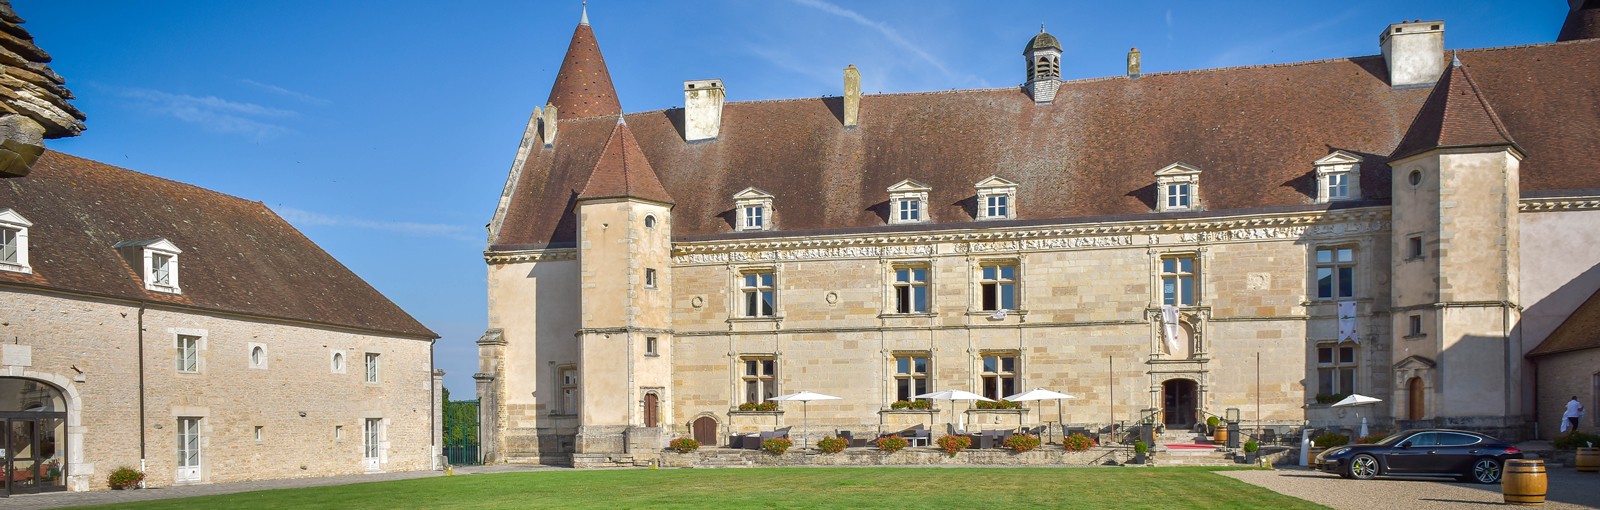 Bourgogne - Chateau - Hôtel